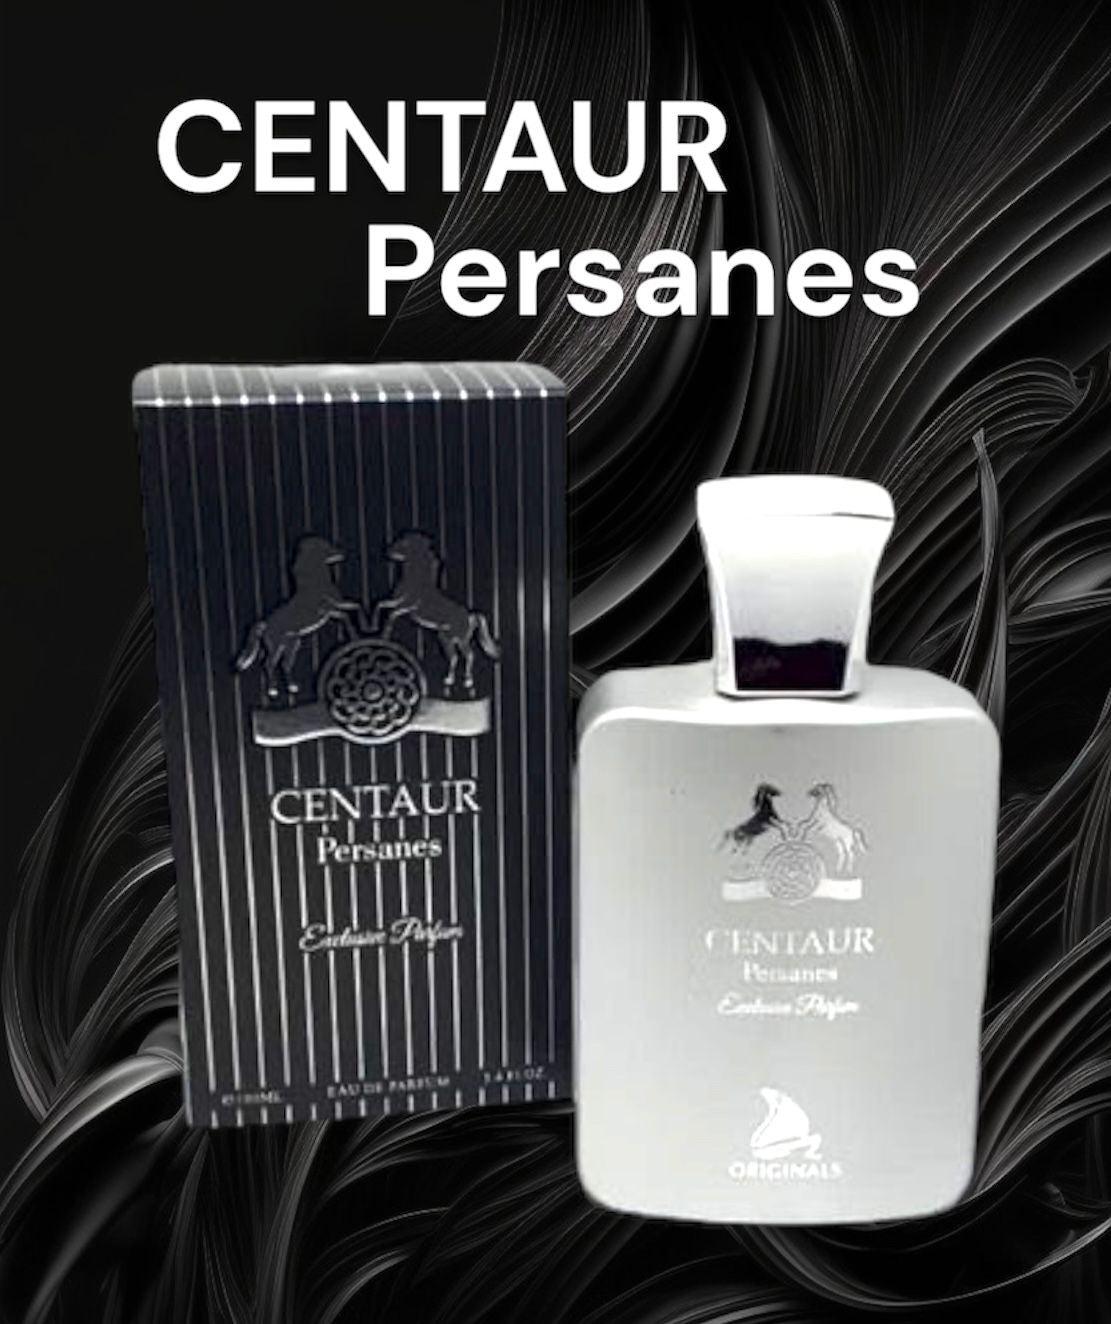 Centaur Persanes